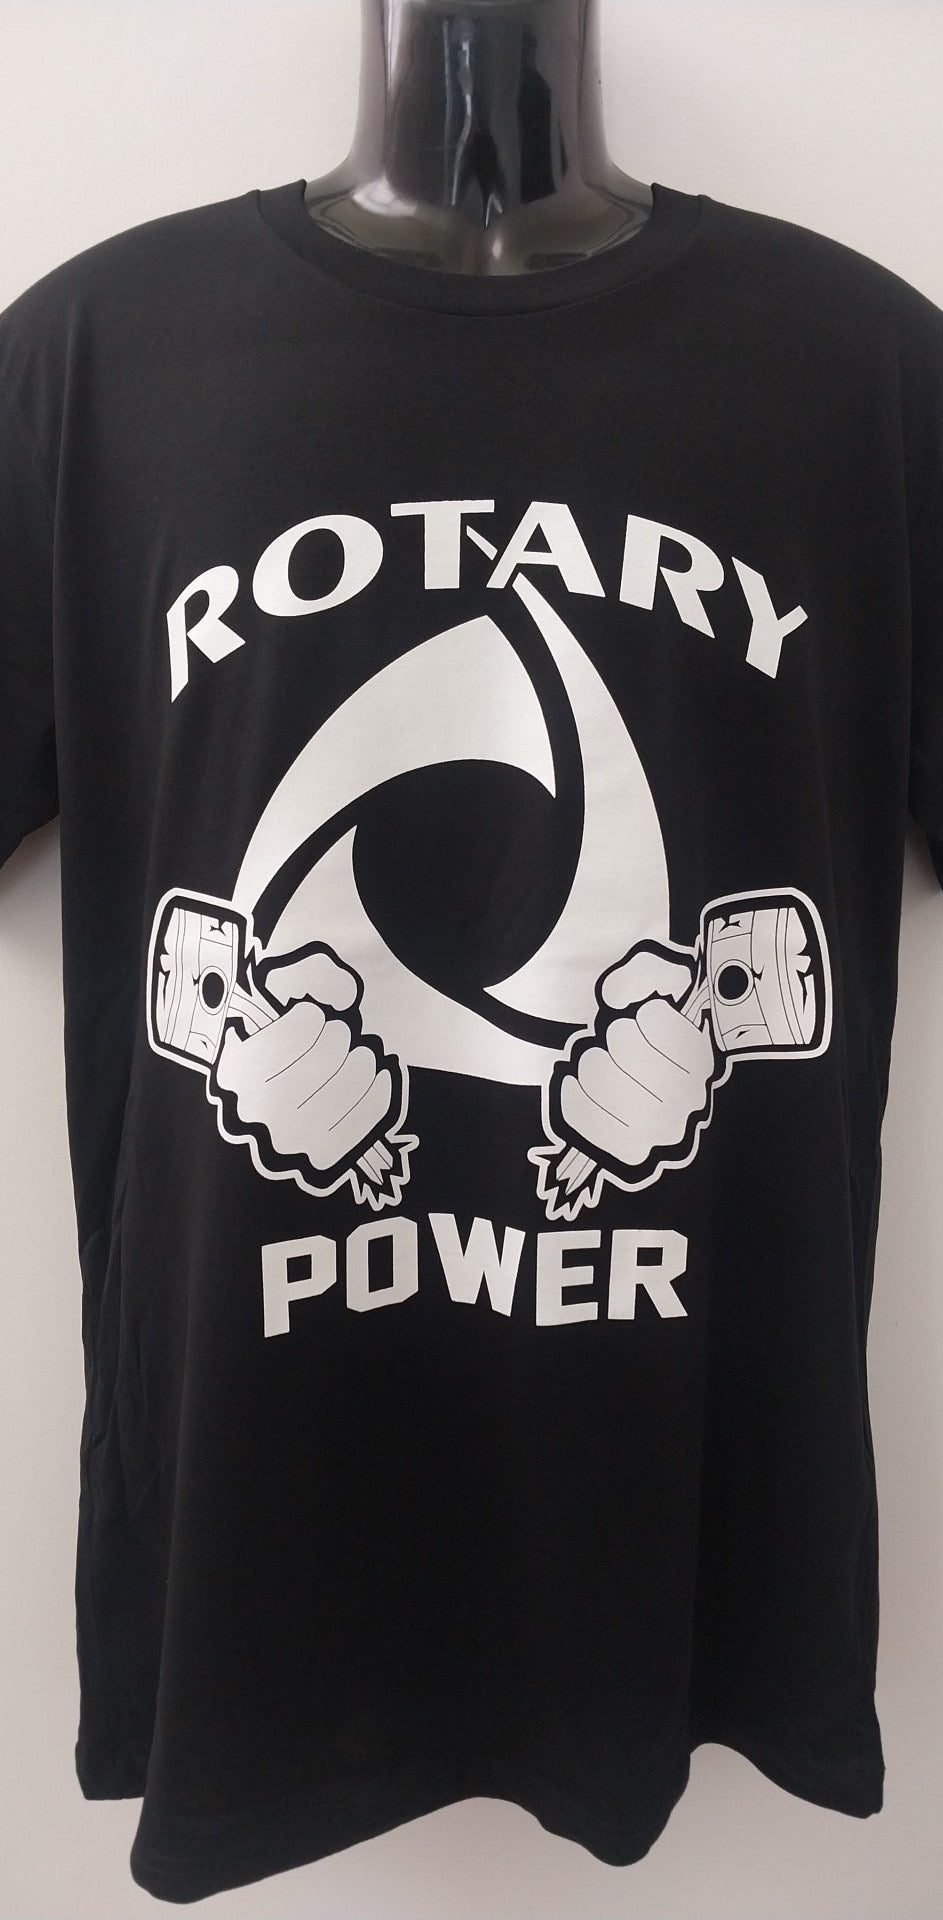 PAC Rotary Power